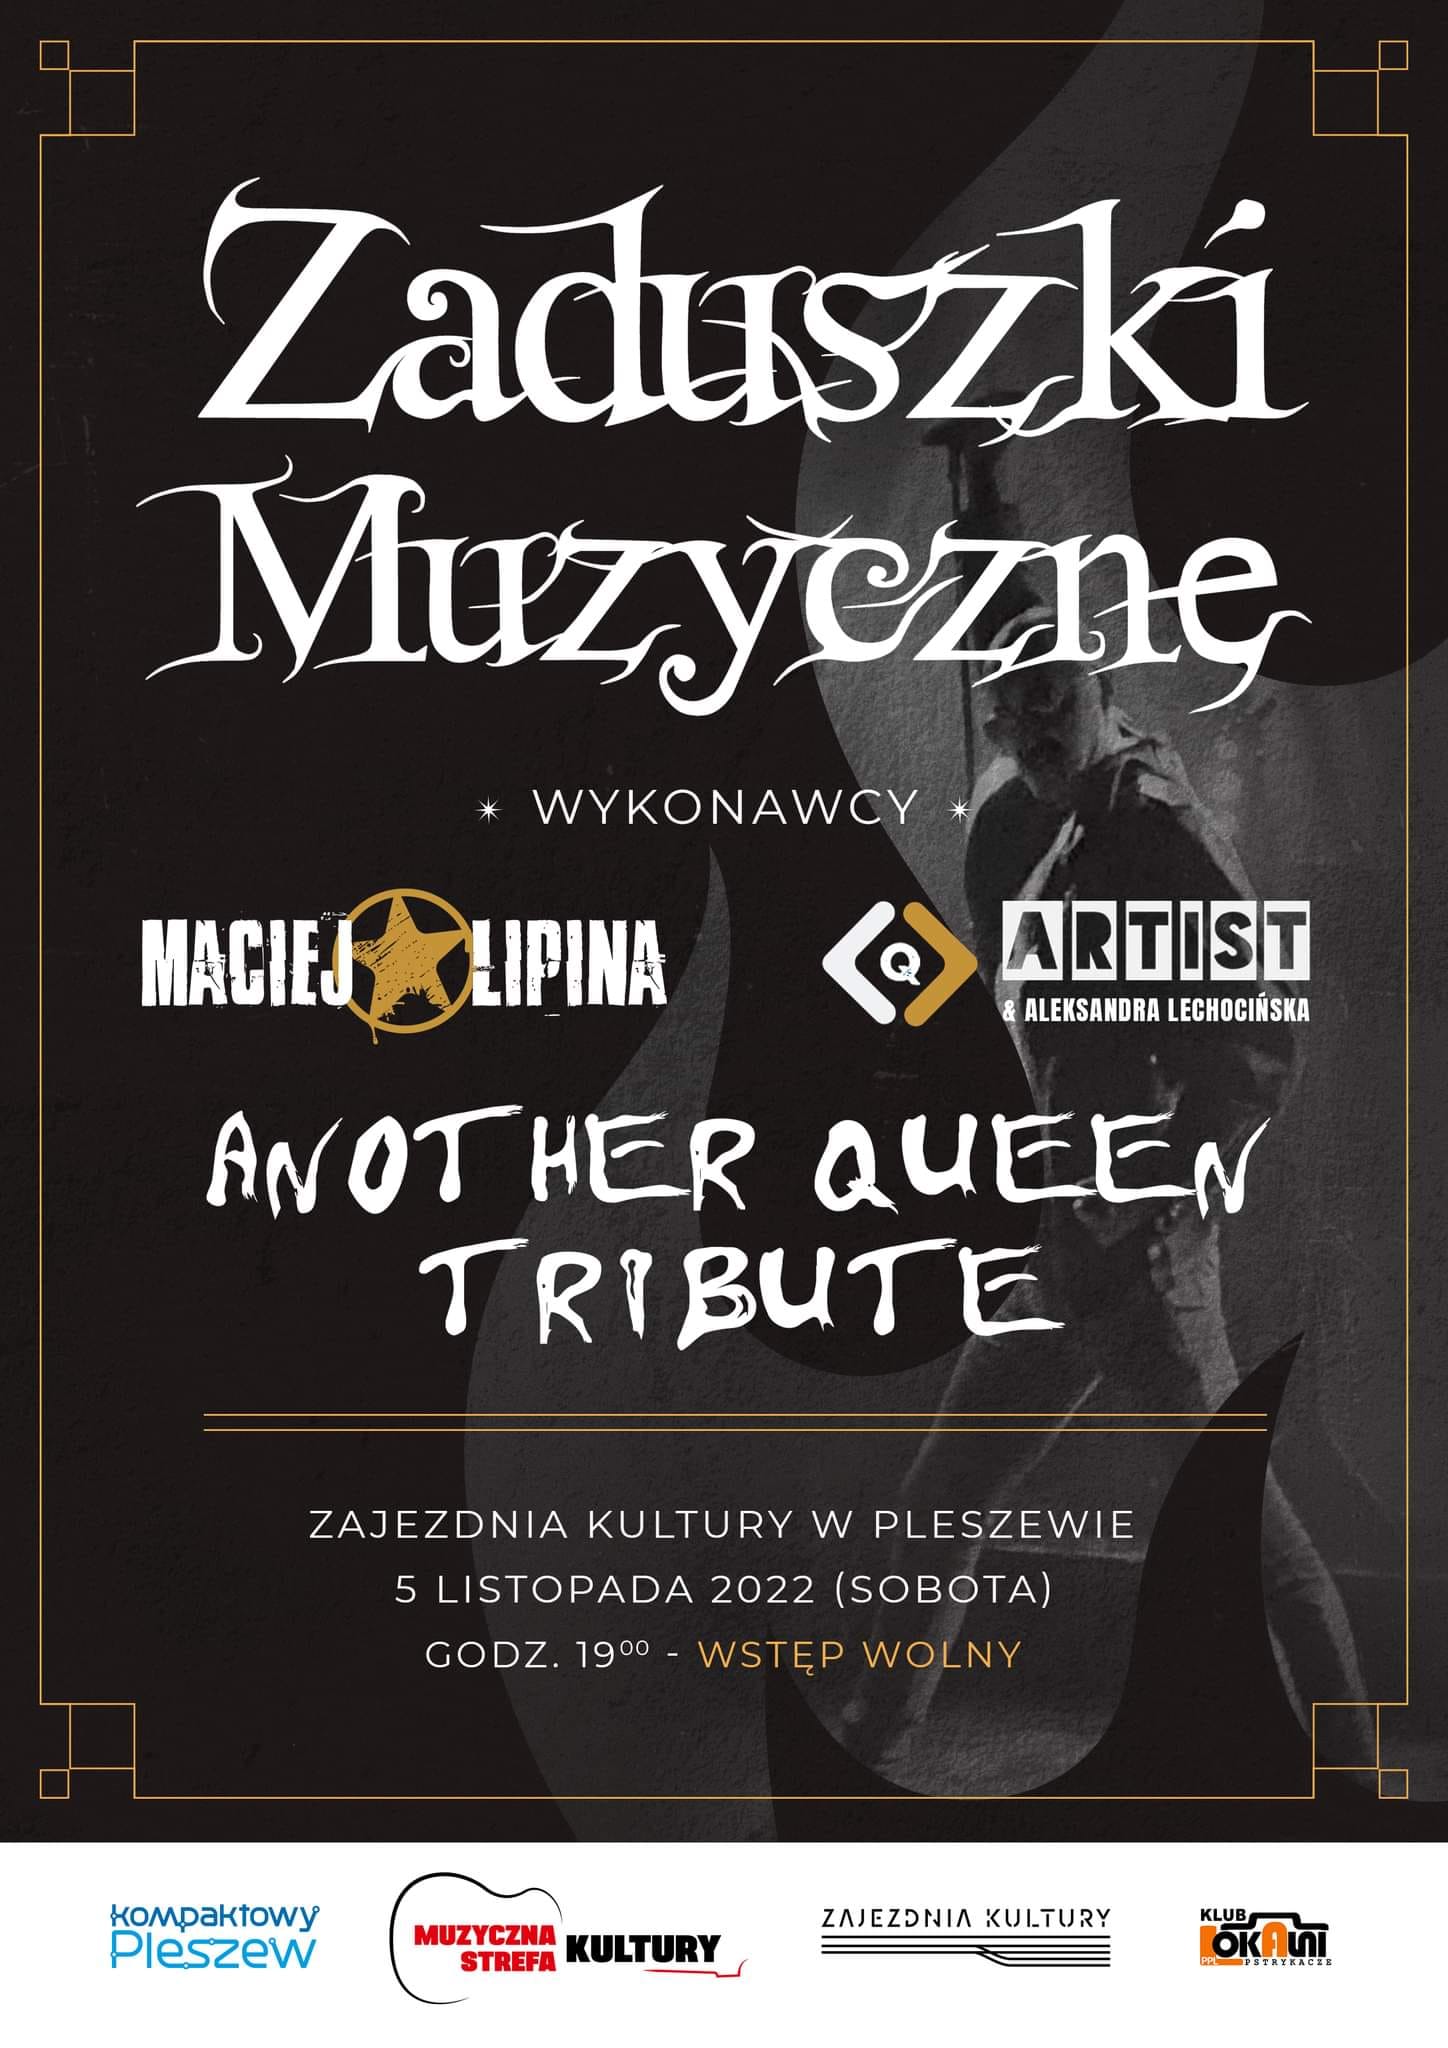 Plakat zaduszek Muzycznych w Zajezdni Kultury w Pleszewie 5 listopada o godzinie 19:00